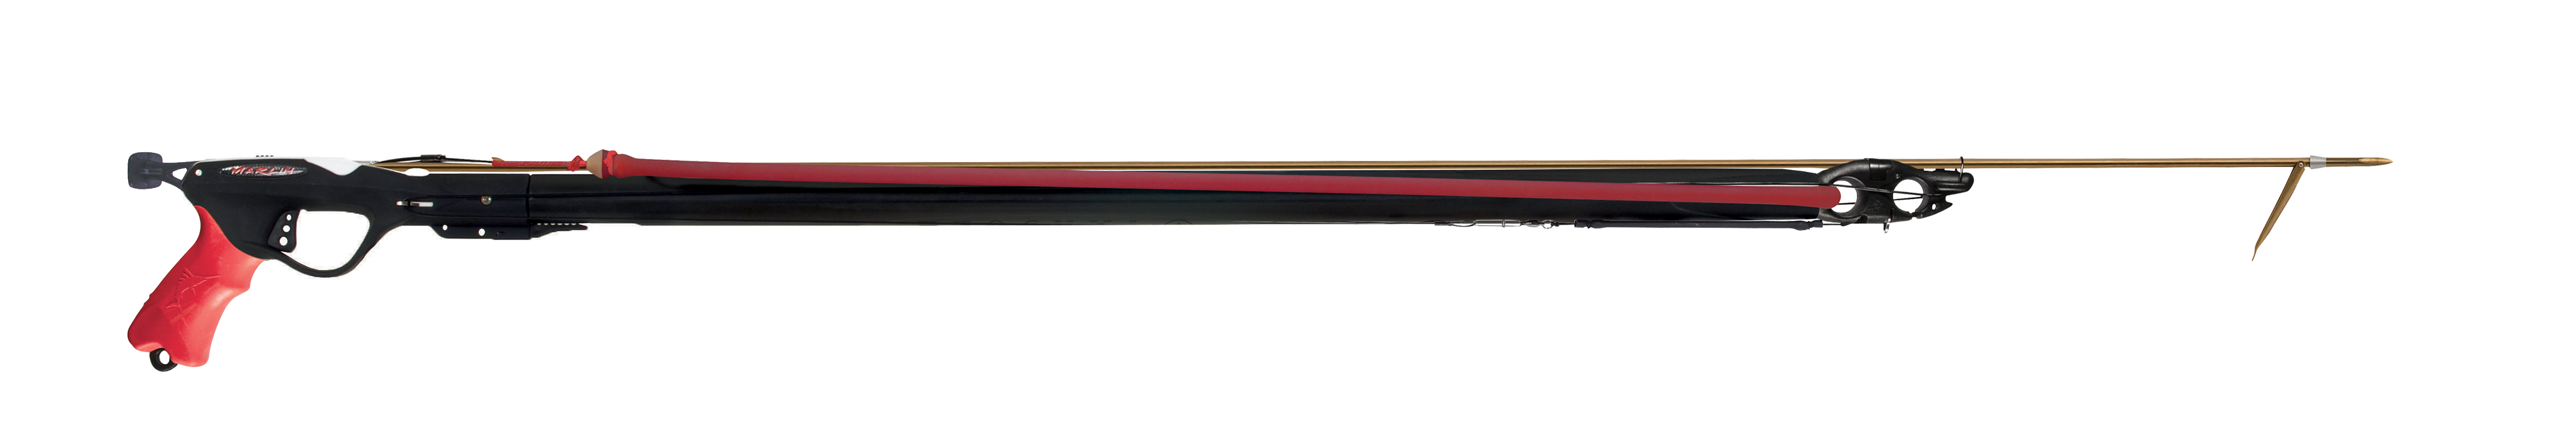 Beuchat Marlin Elite Red Line Speargun - 950MM